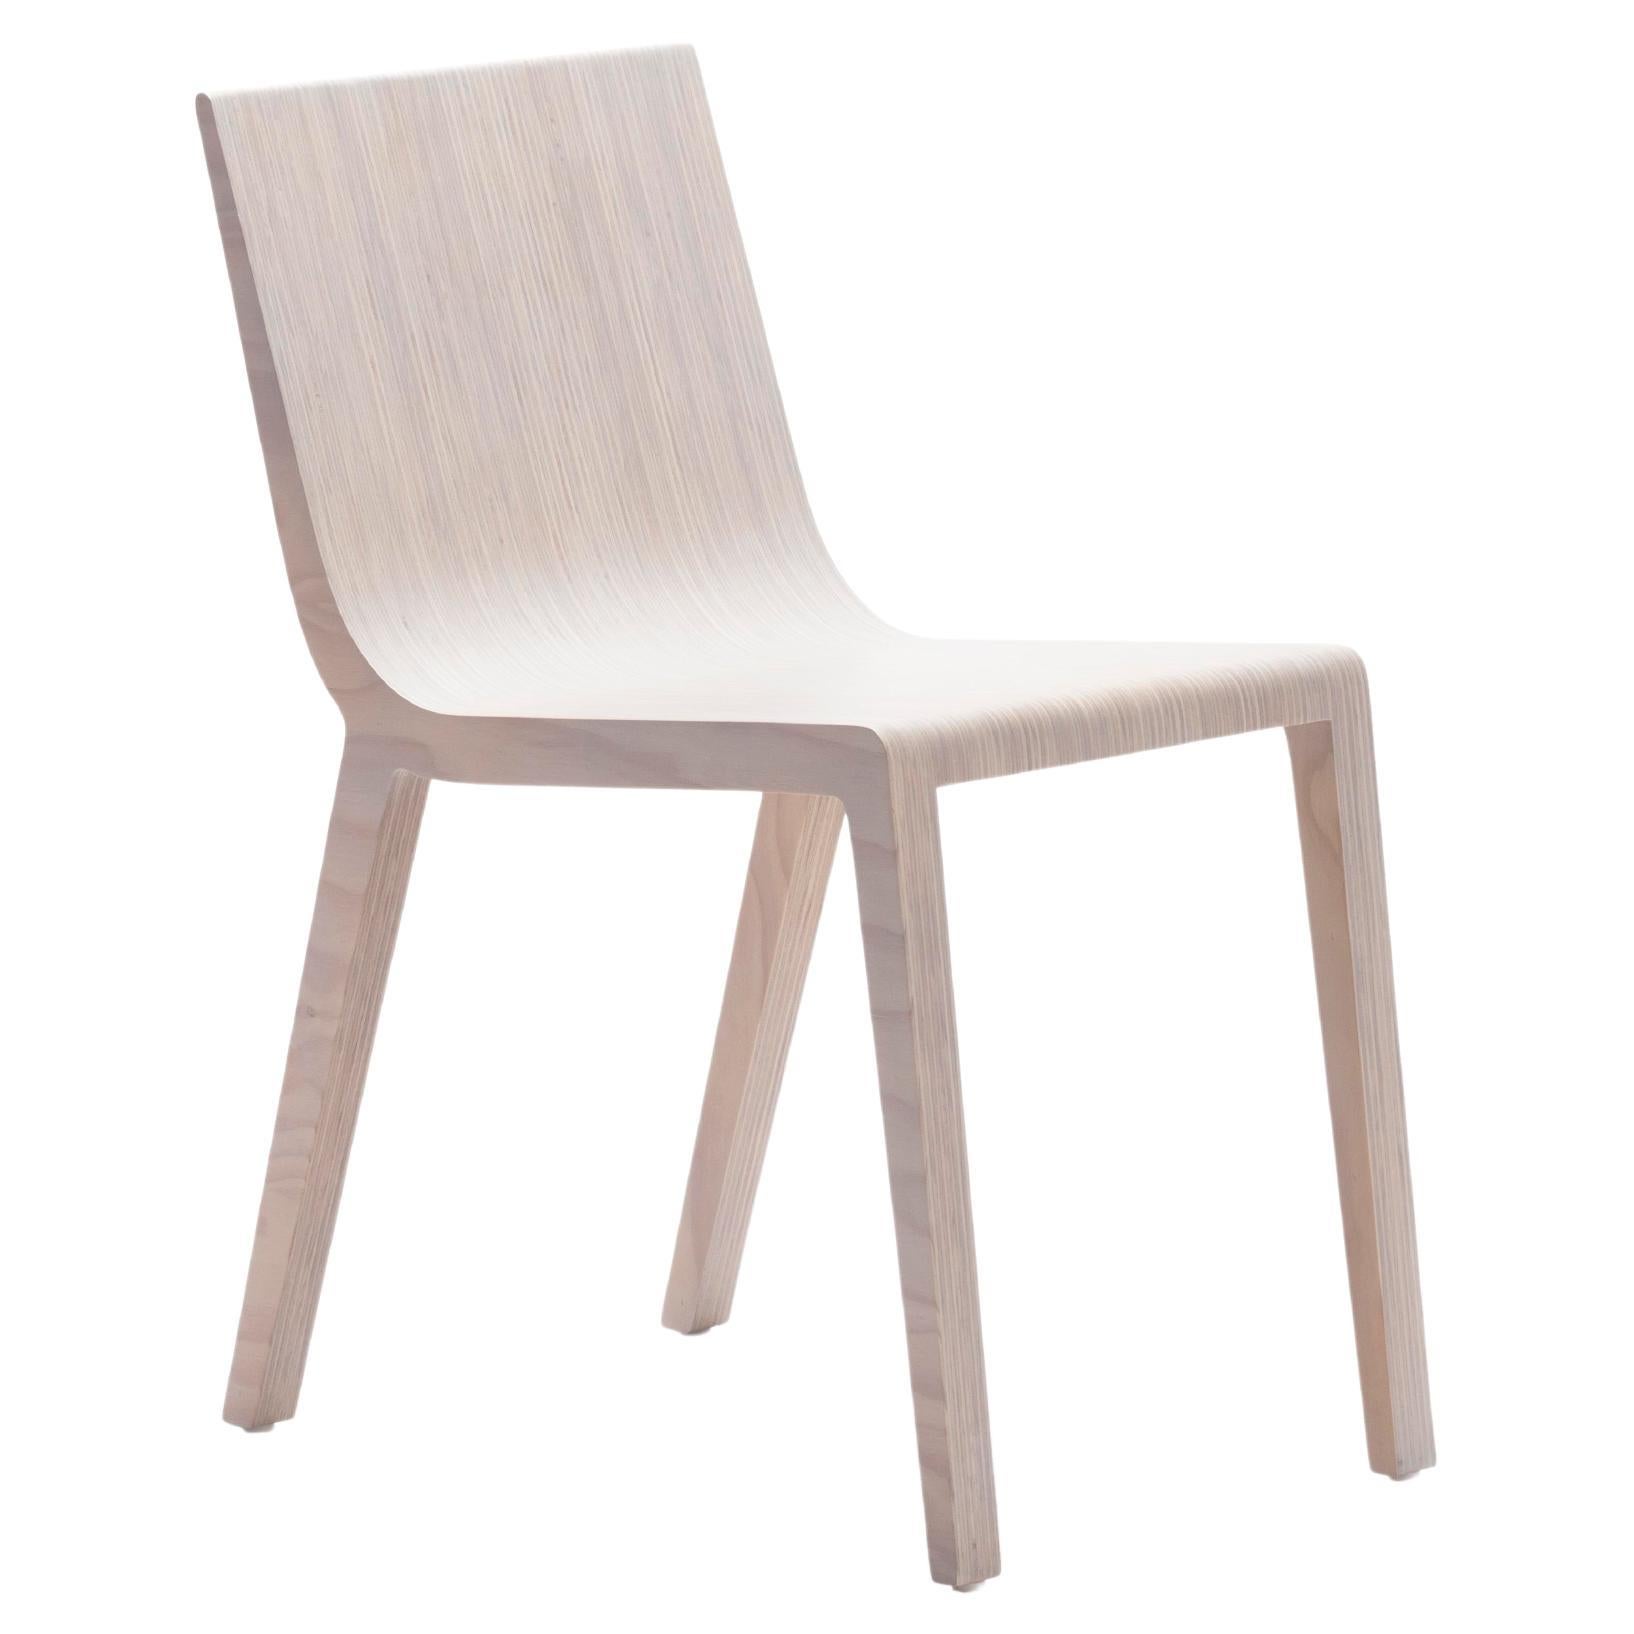 Y-Stuhl von Piegatto, ein zeitgenössischer und minimalistischer Stuhl